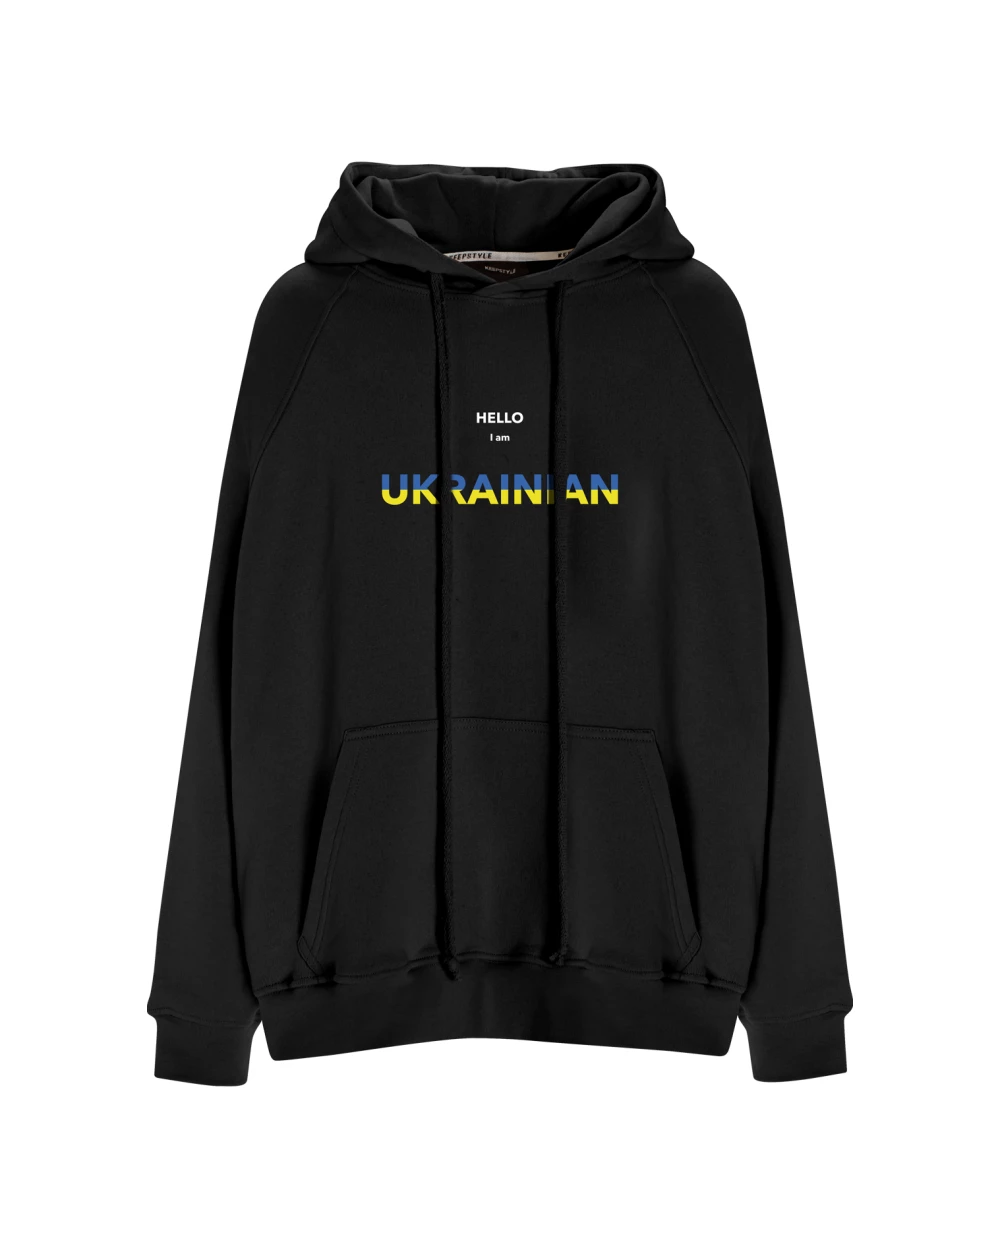 ukrainian hoodie in black